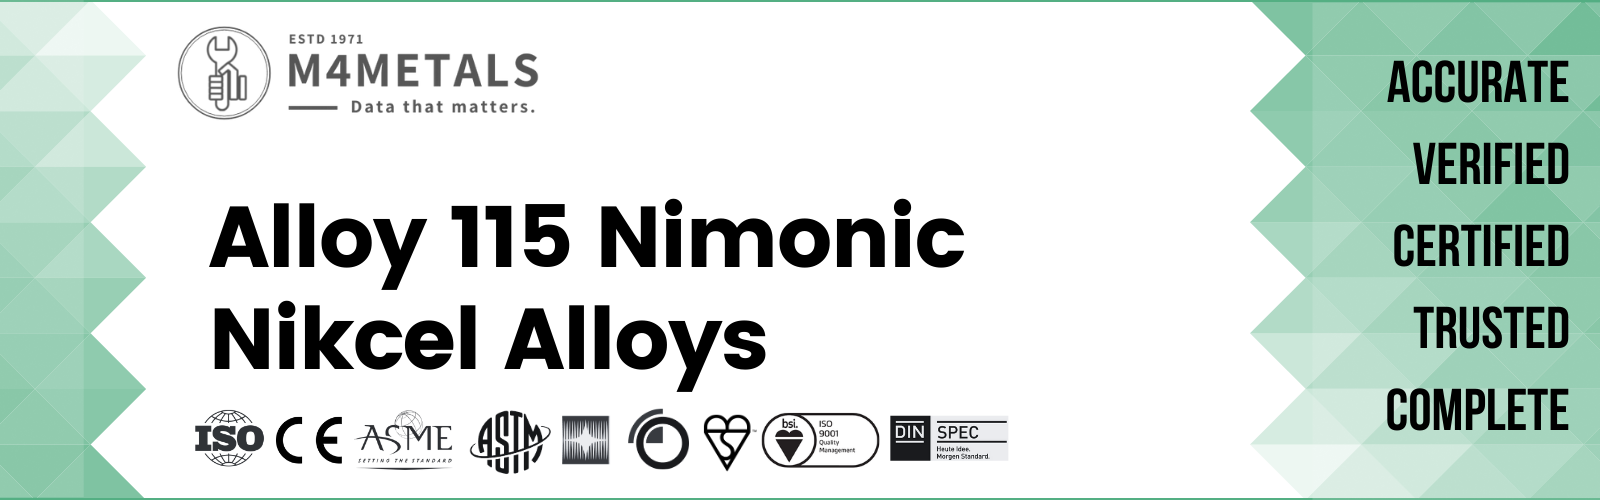 Nimonic Alloy 115